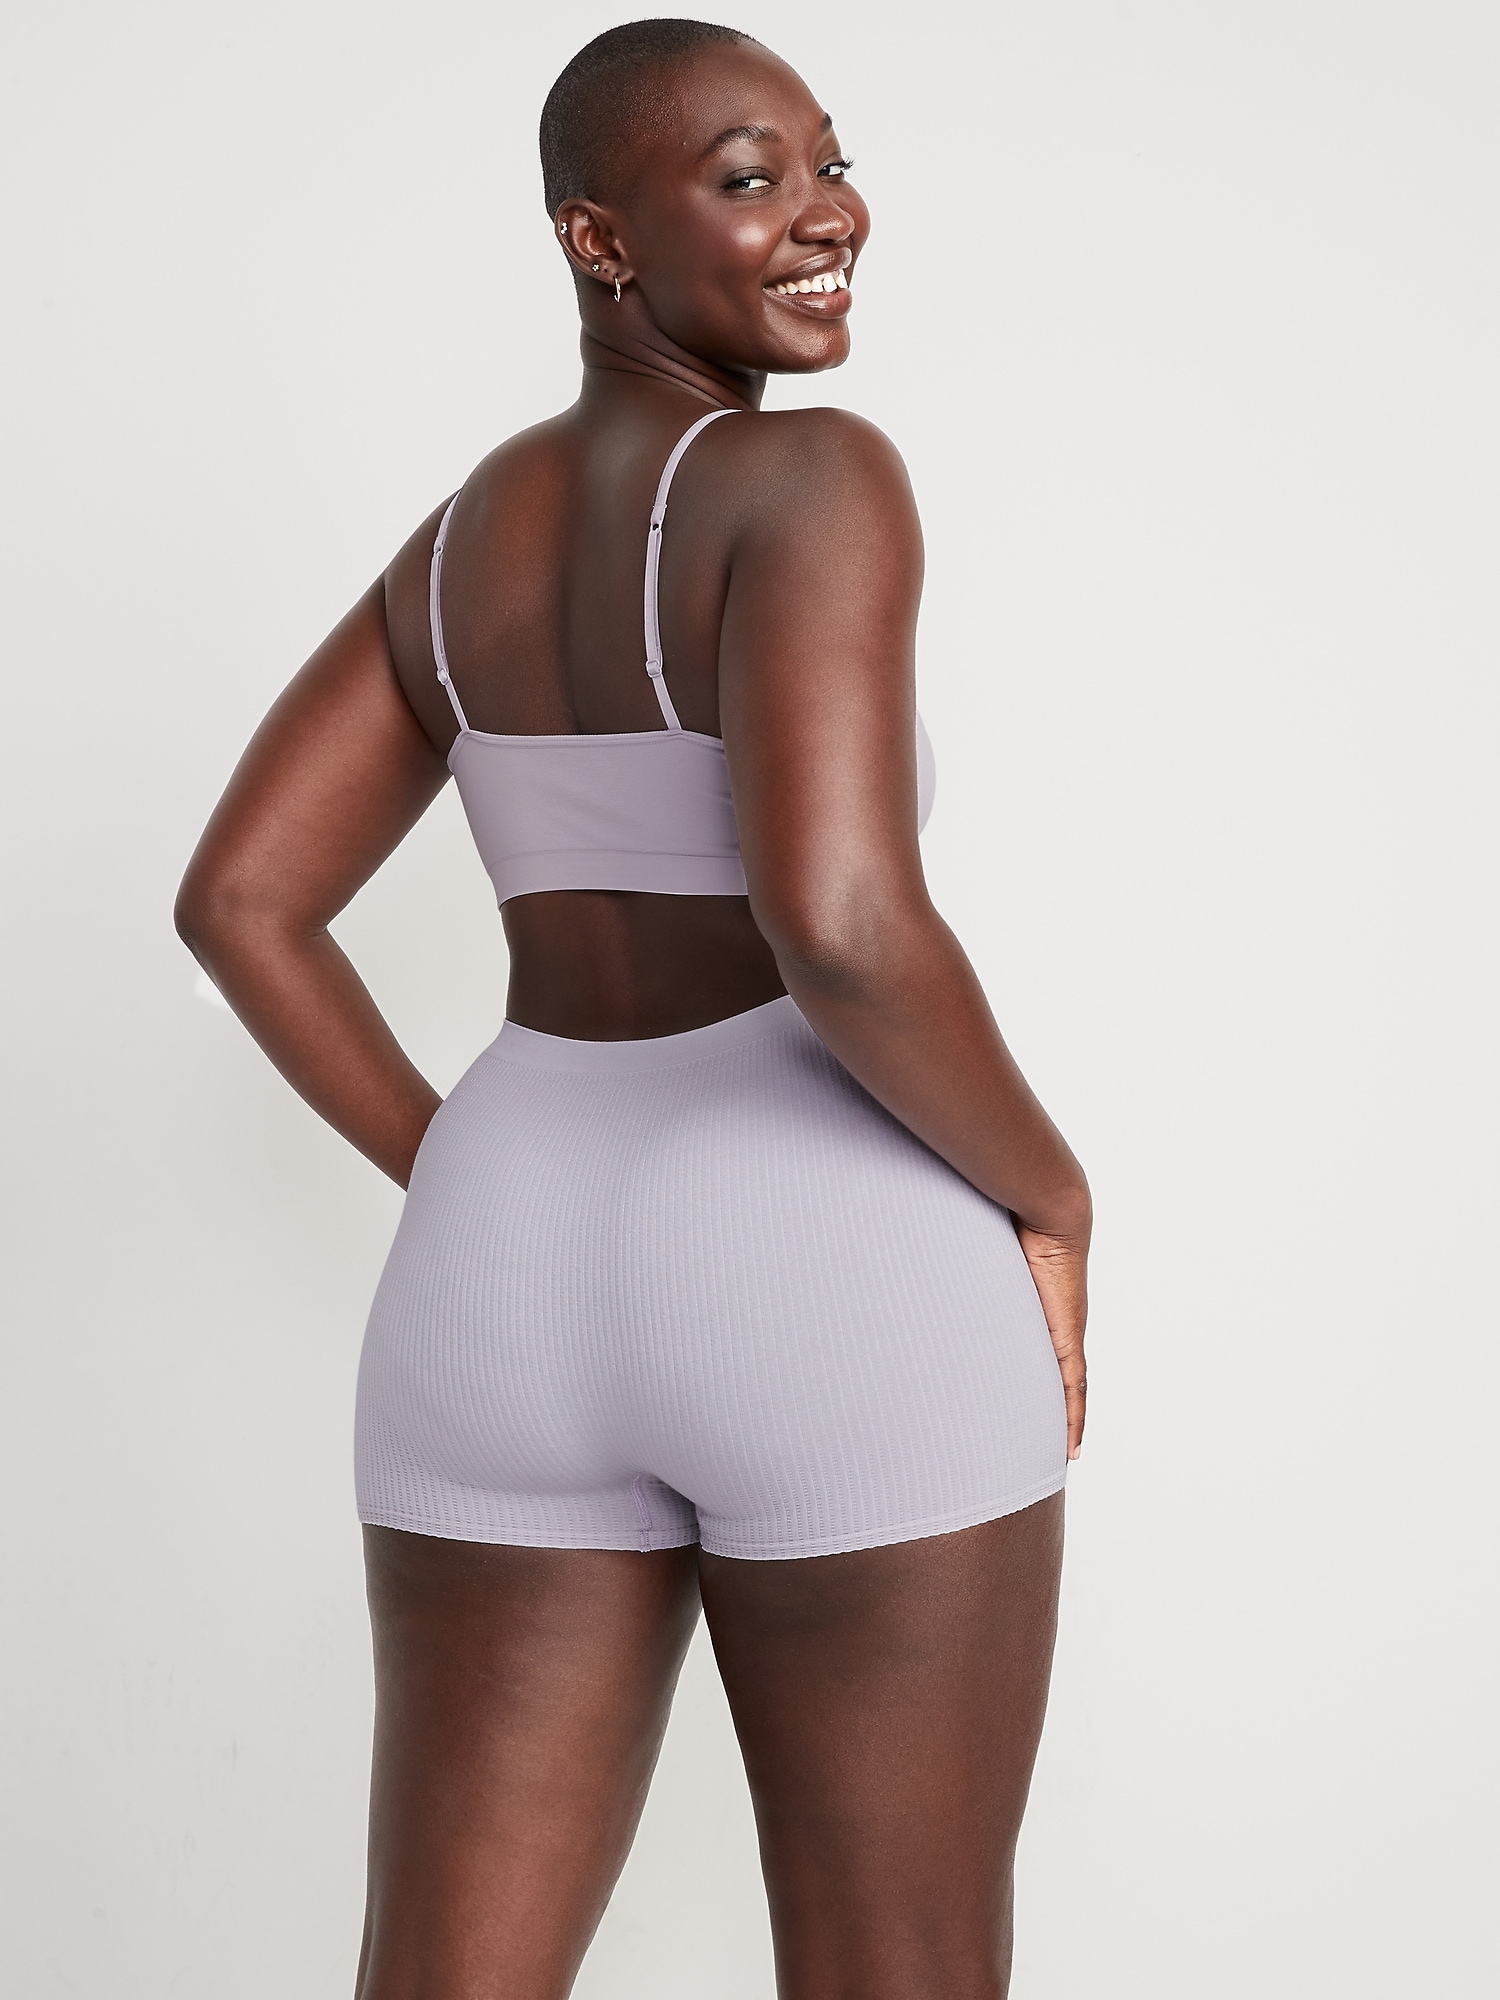 Seamfree® Rib Boyshort  Gym shorts womens, Effortless style, Nylon blend